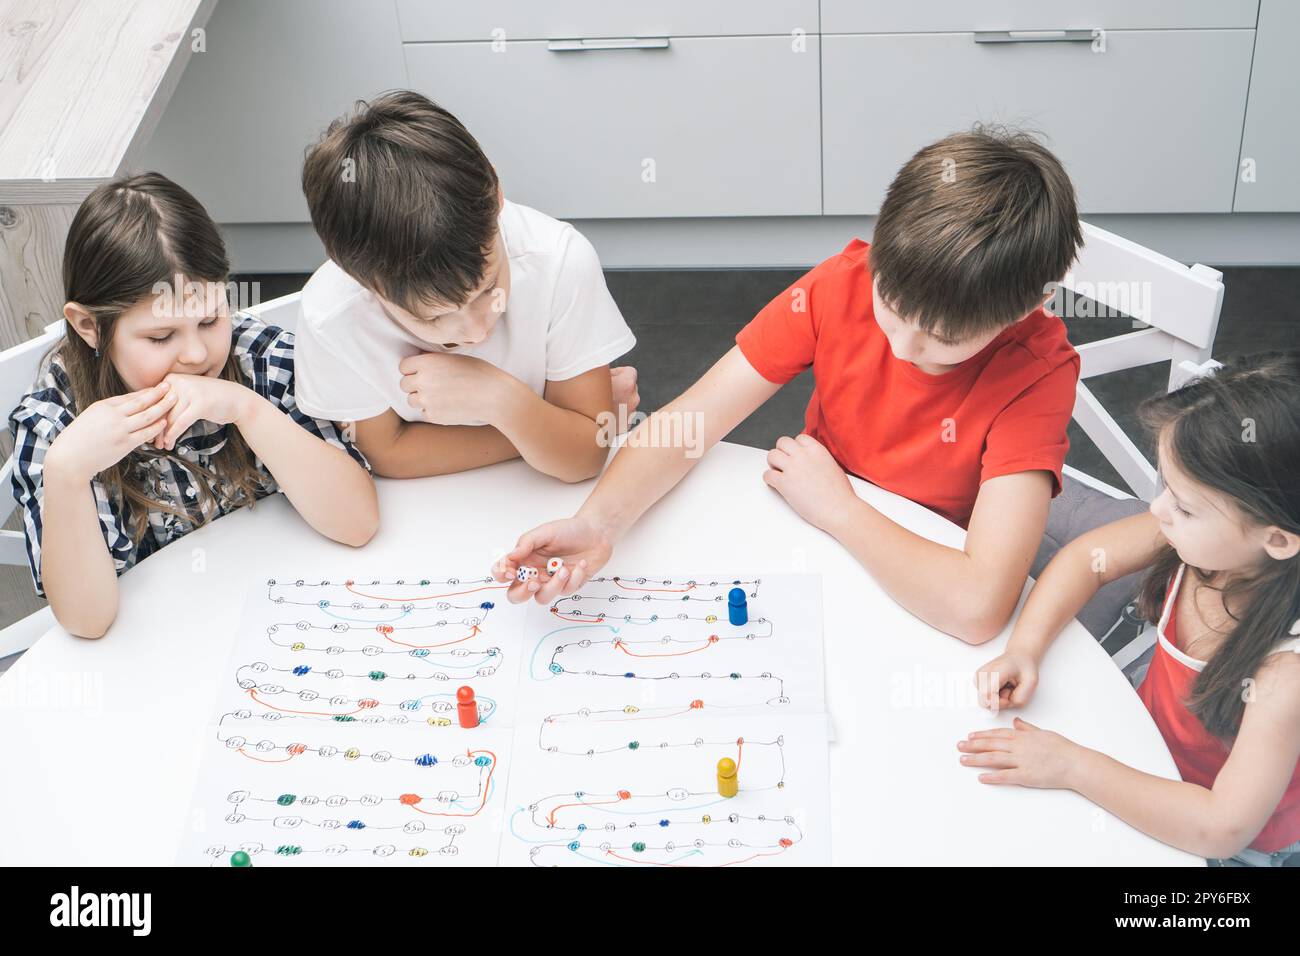 Freunde spielen Brettspiel mit Würfel und Chips auf dem Tisch, von oben gesehen. Kinder schauen sich den Jungen an, würfeln und bewegen die Figur. Stockfoto